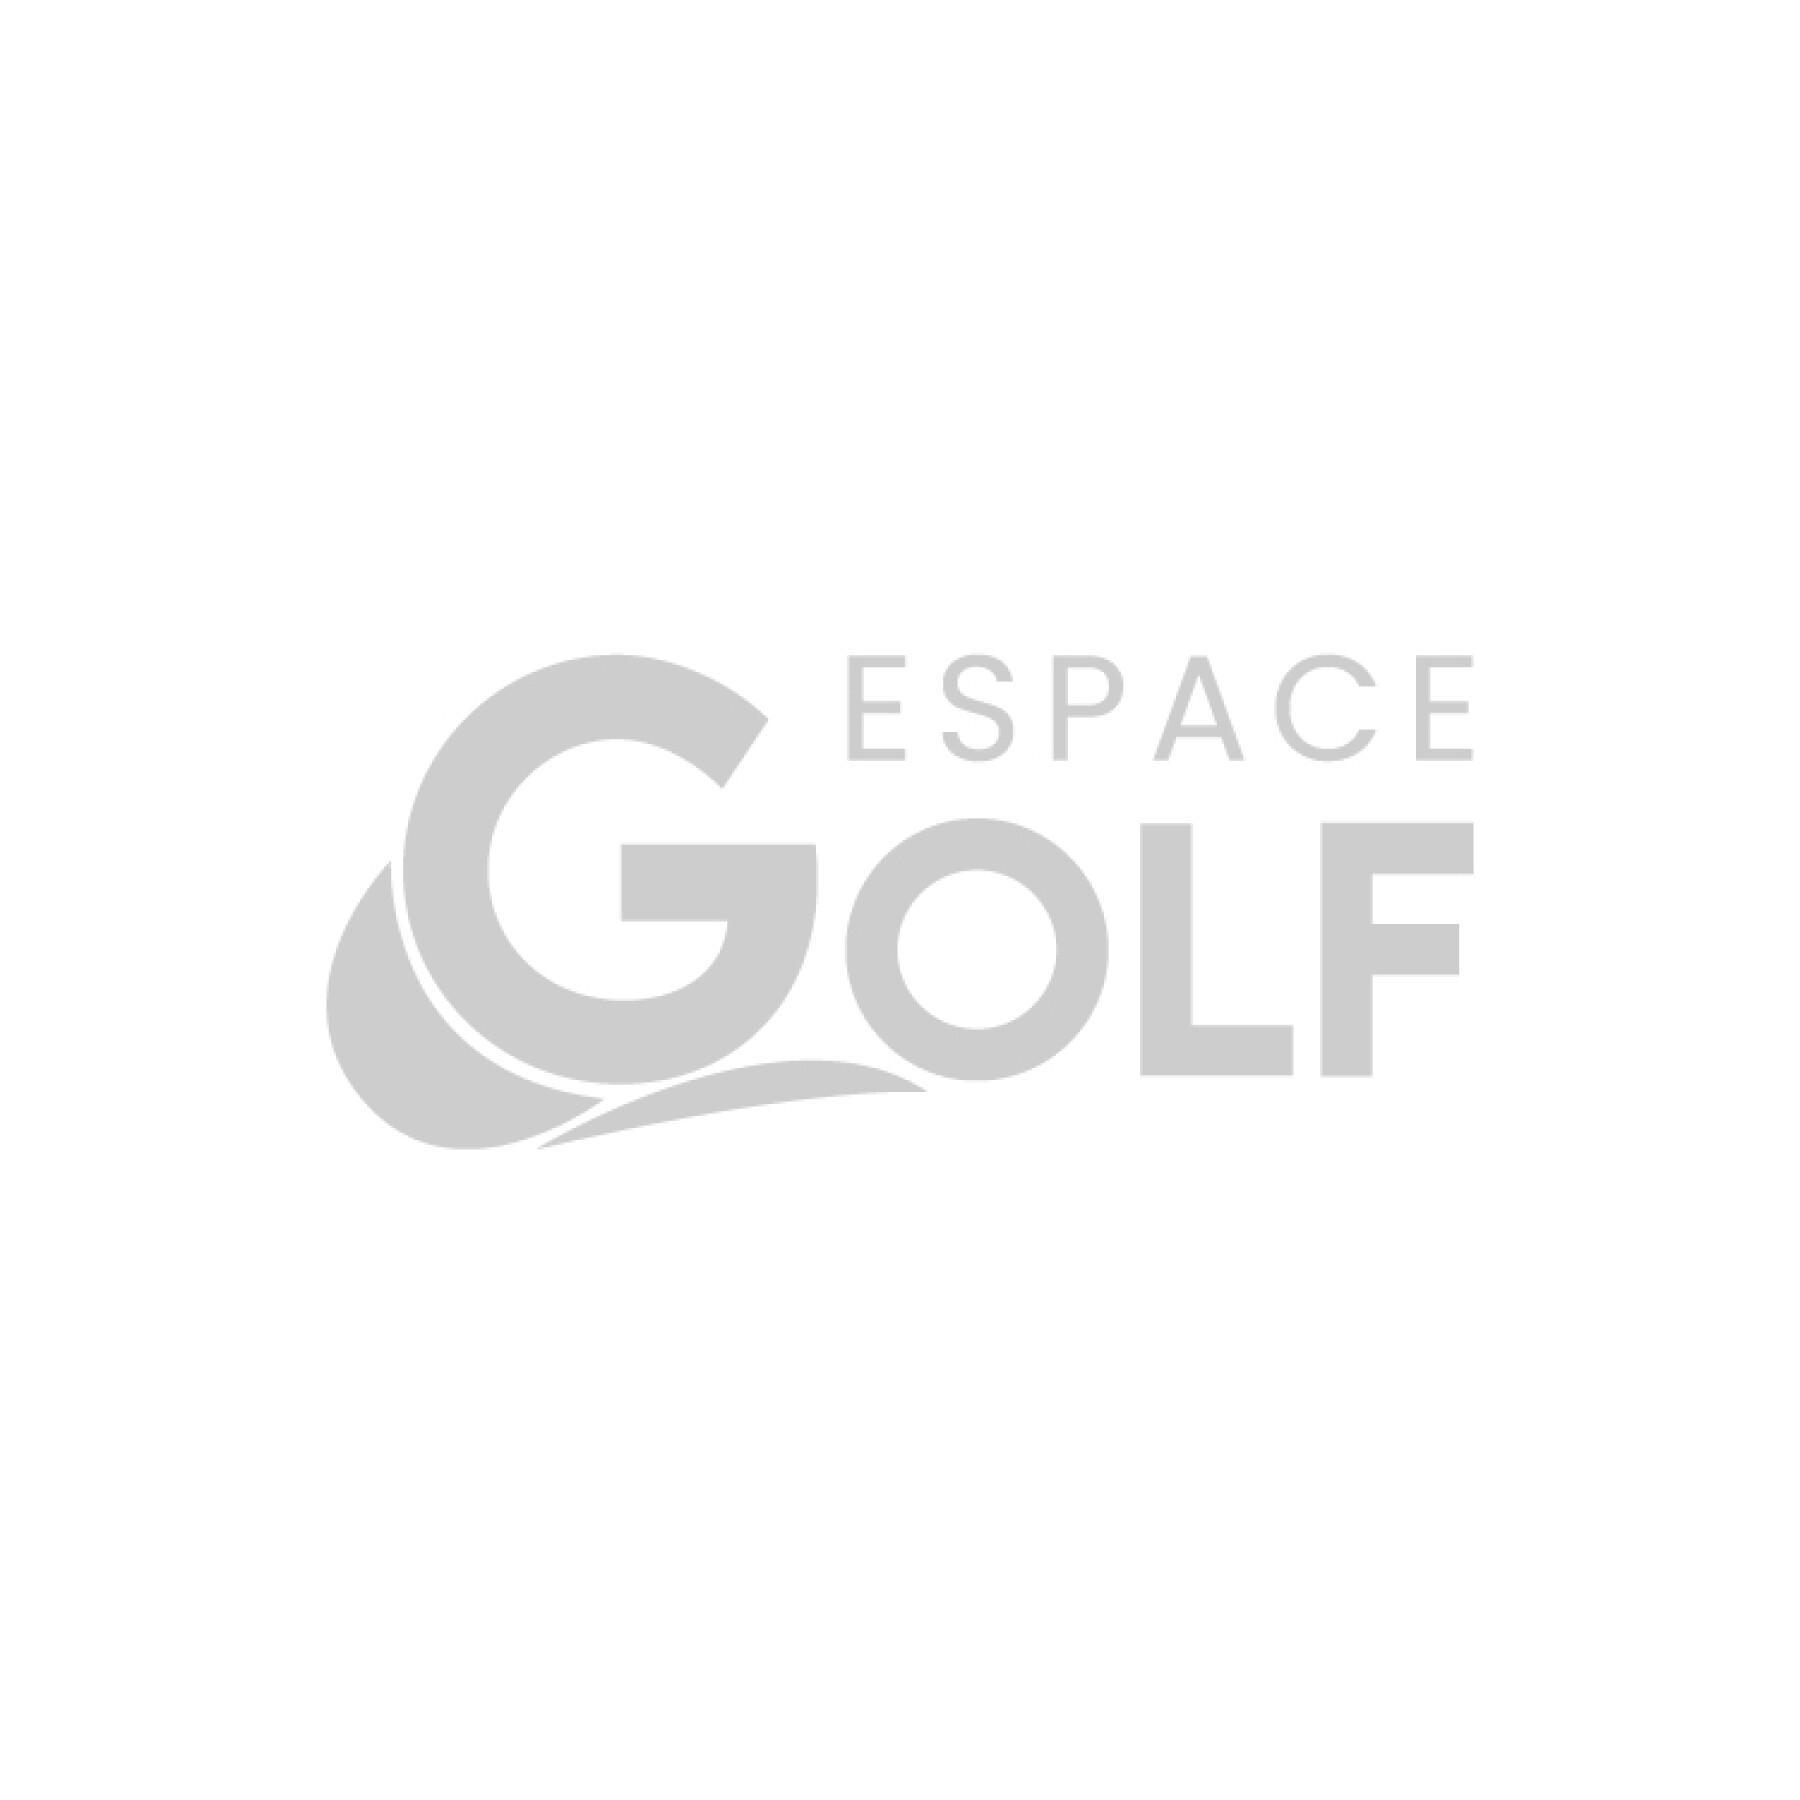 Elektrokarren mit Sportgriff Kiffe Golf K7